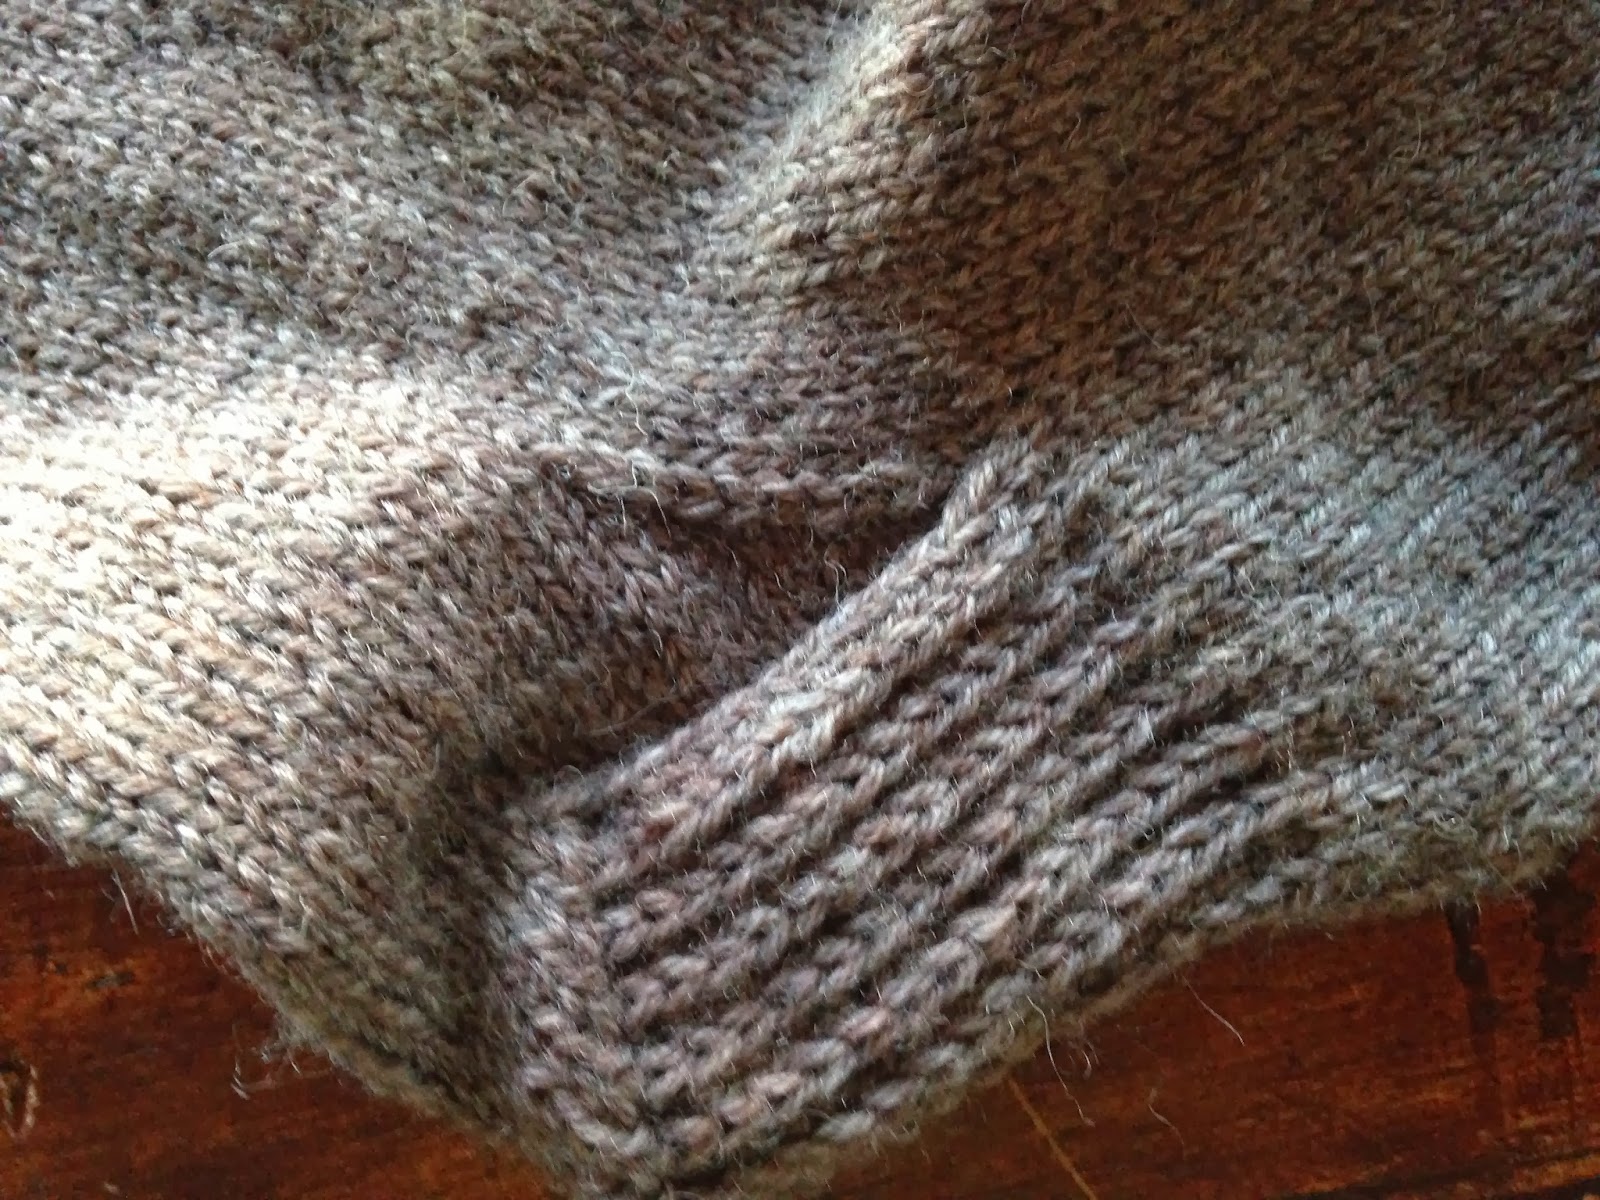 Riverside knitting